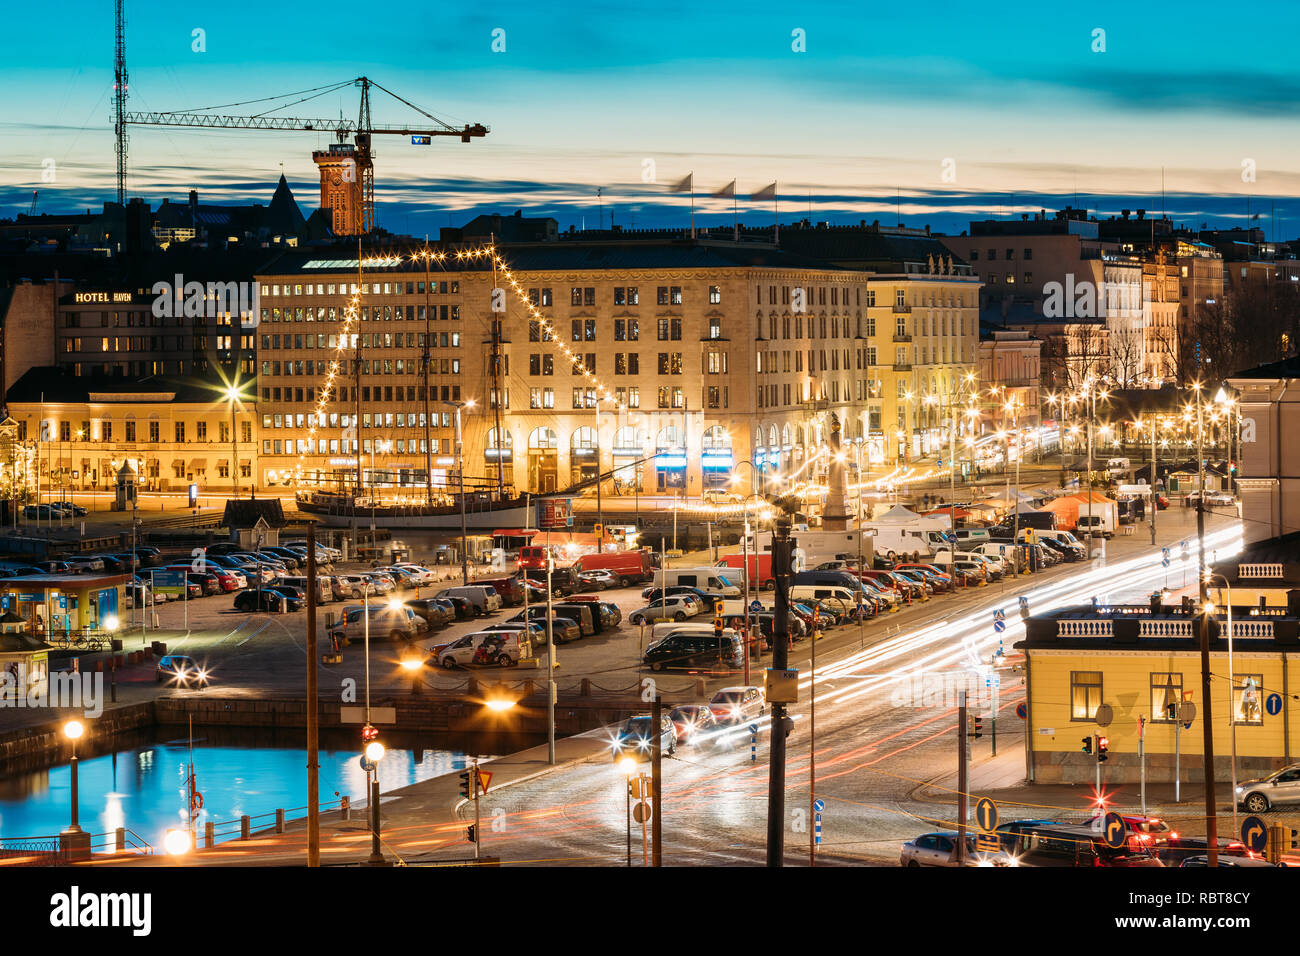 Helsinki, Finnland - 10. Dezember 2016: Abend Nacht Blick auf Marktplatz und Verkehr auf Pohjoisesplanadi Straße. Stockfoto